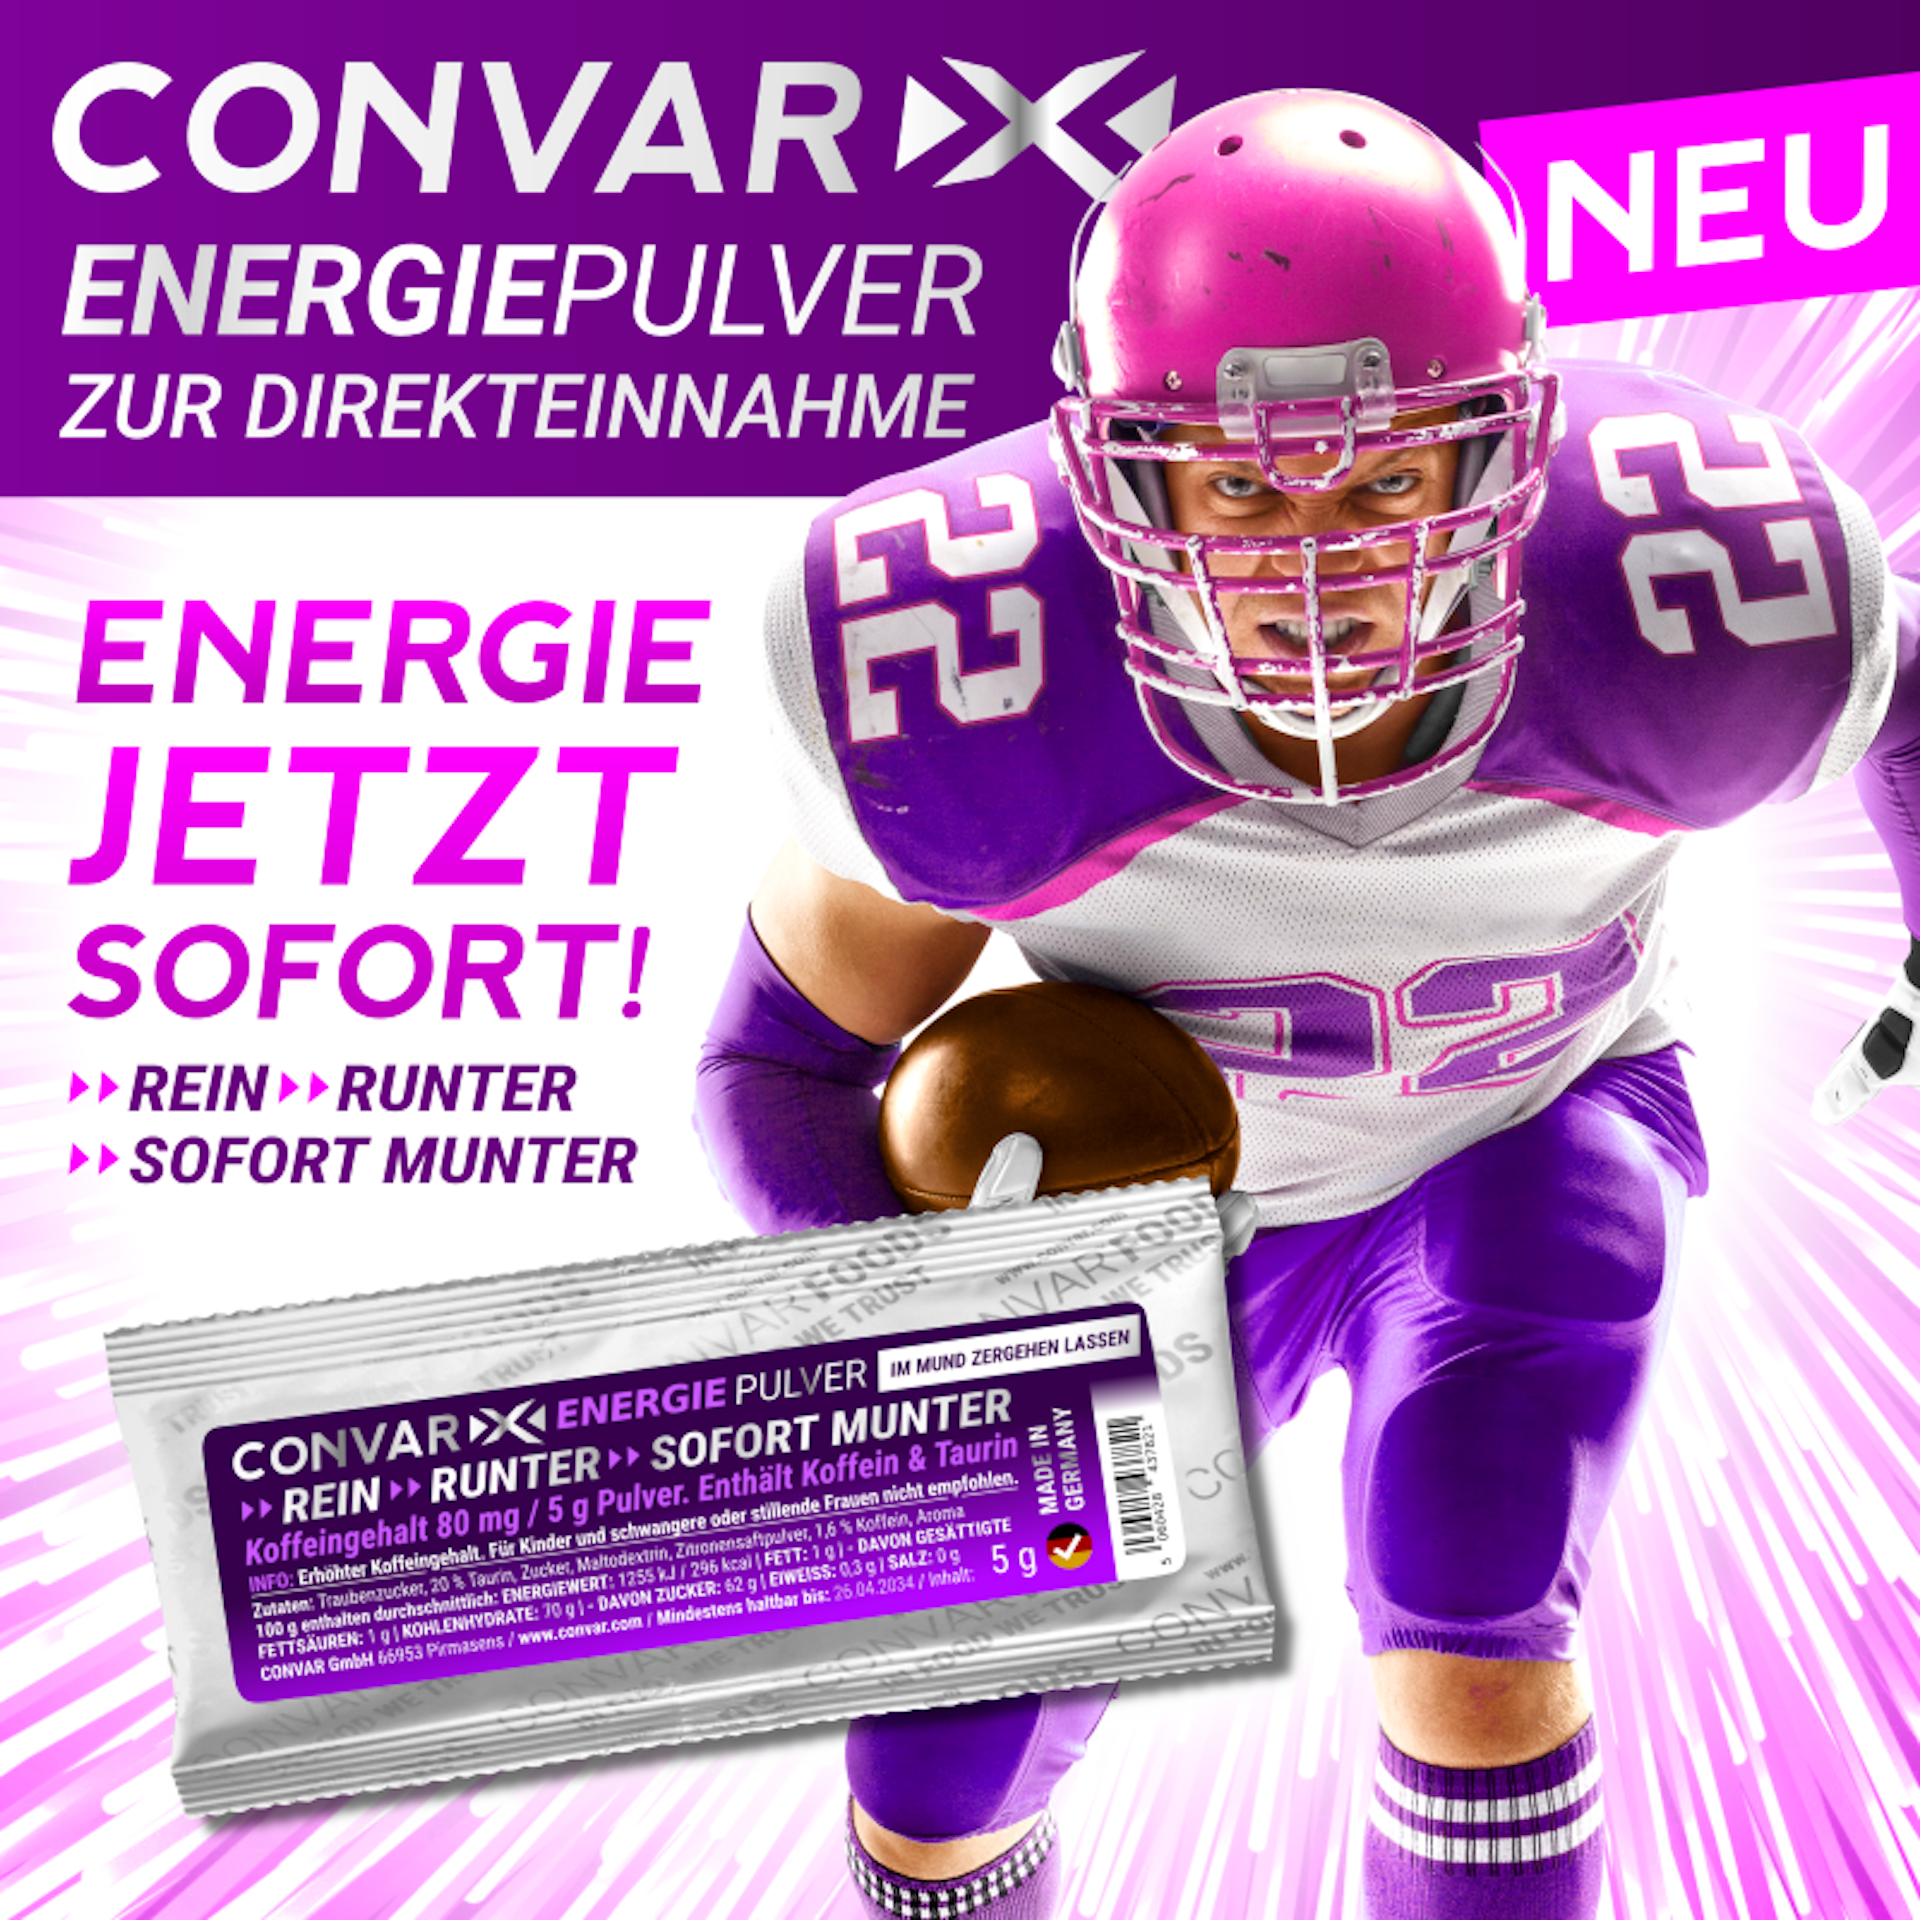 CONVAR-X Energiepulver